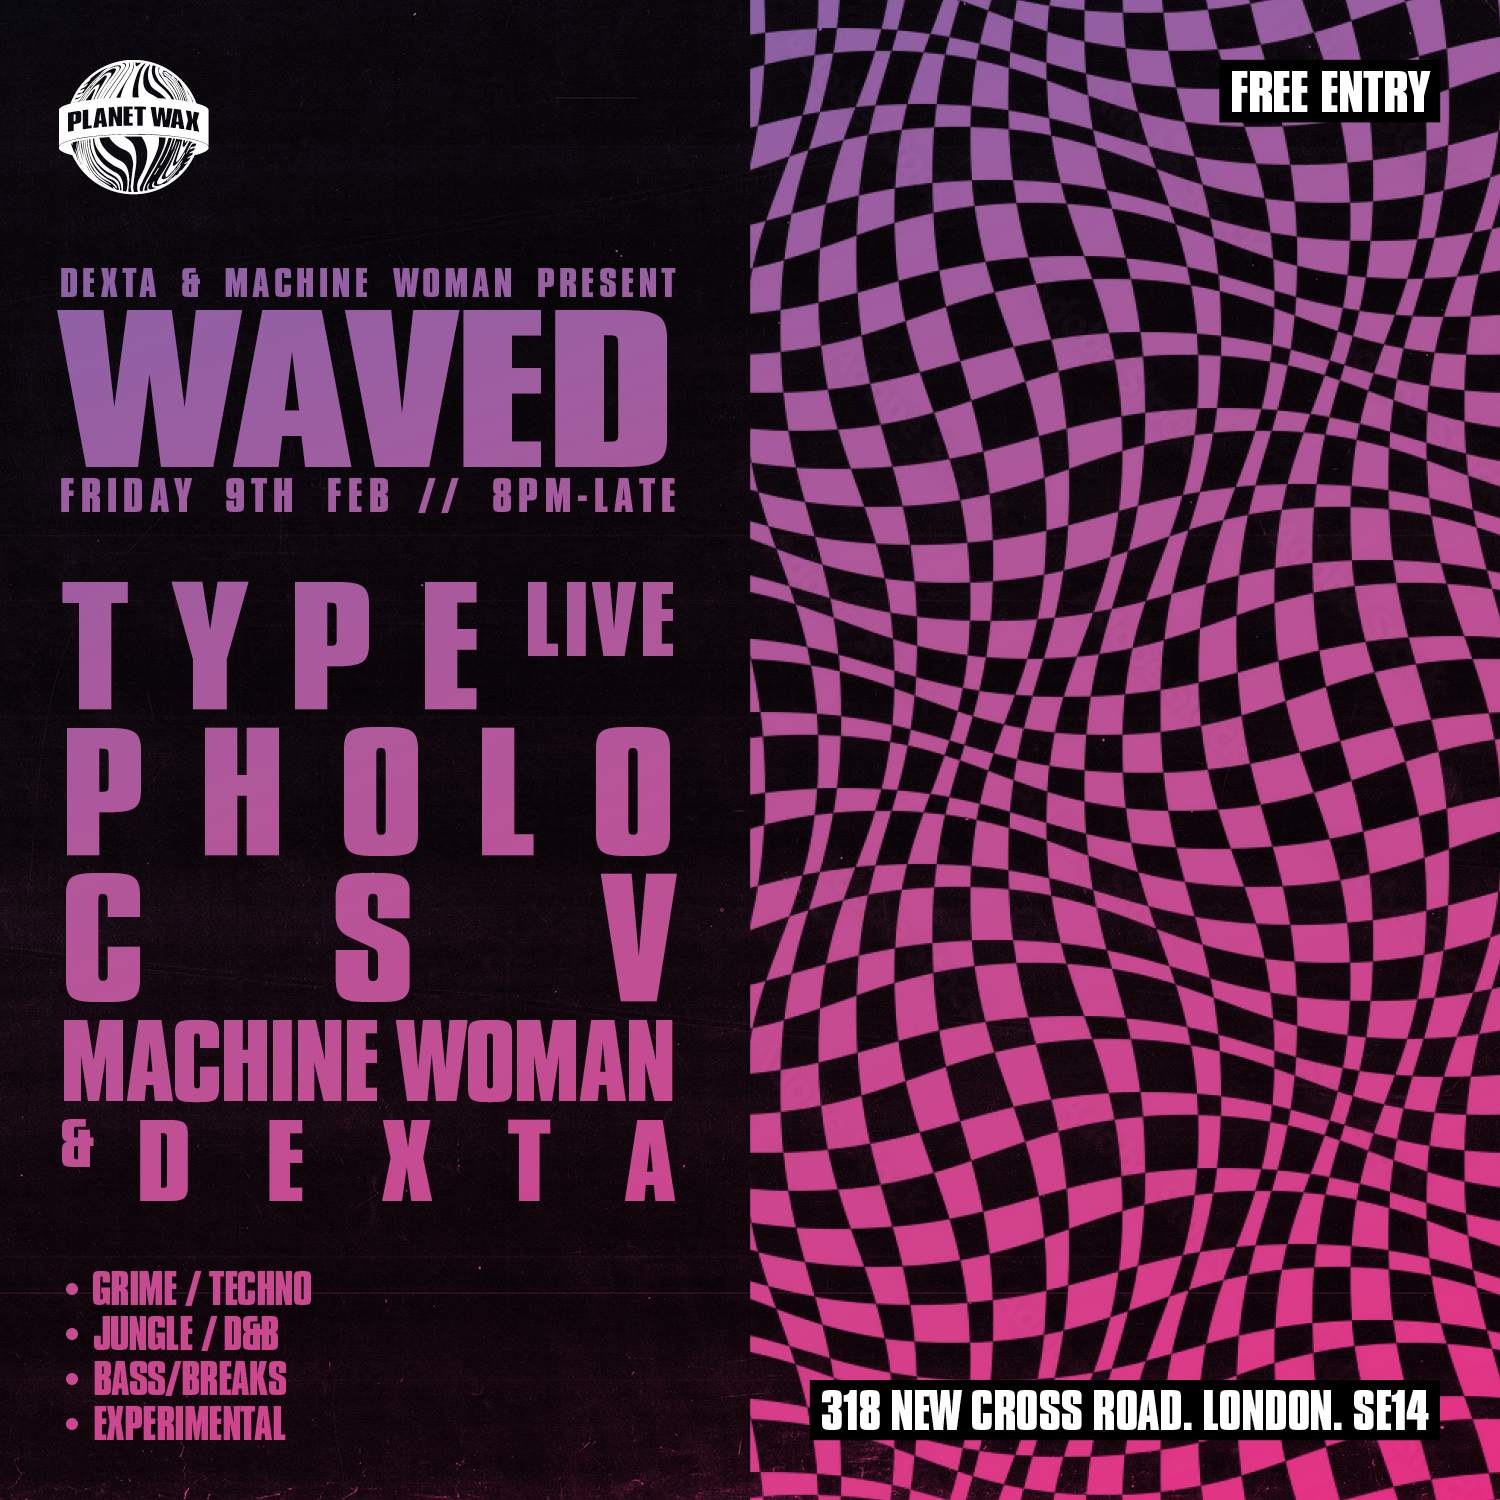 Dexta & Machine Woman present: WAVED - フライヤー表